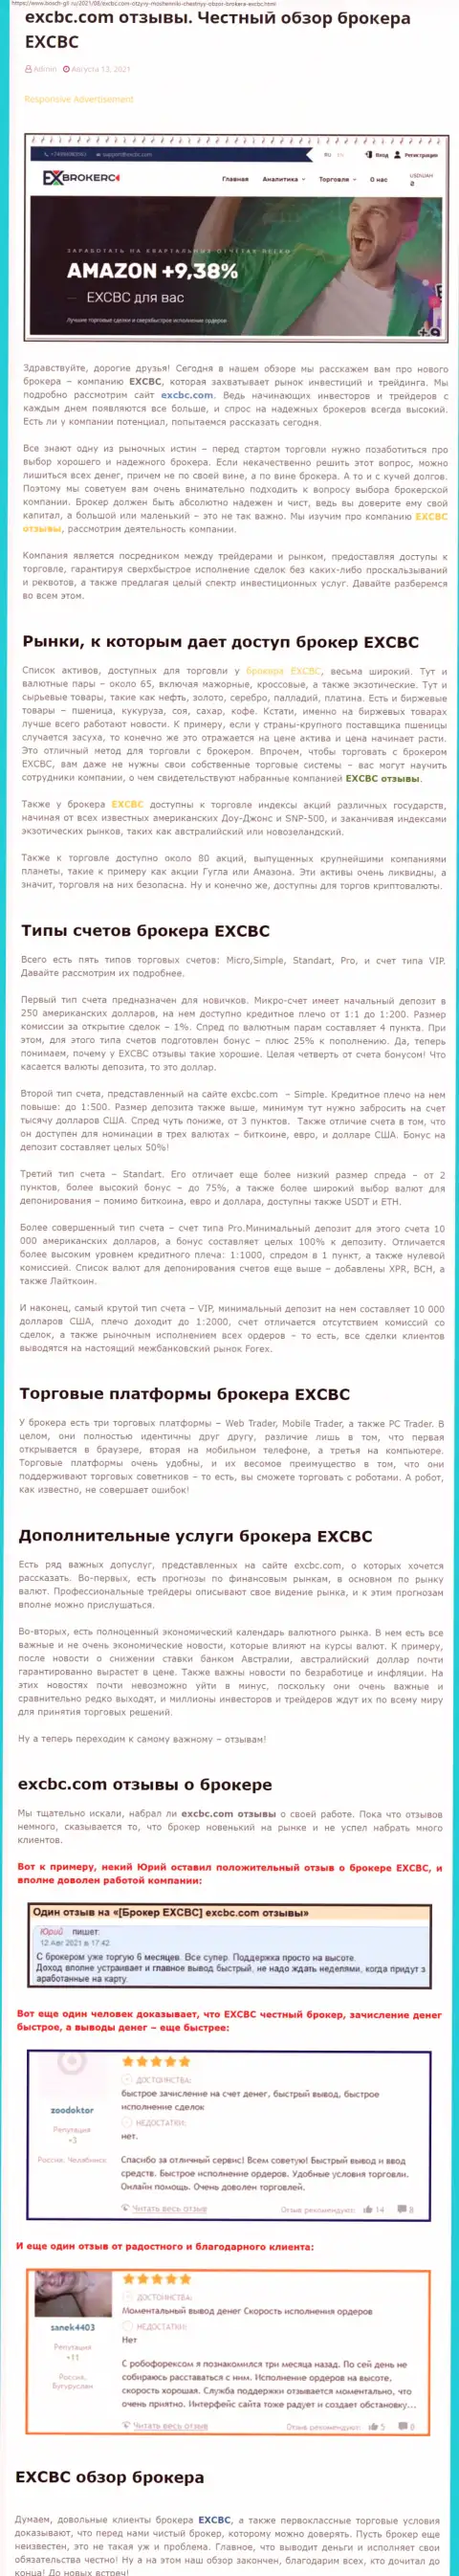 Обзорный материал о ФОРЕКС-дилинговой компании EXCBC на сайте Бош-Глл Ру